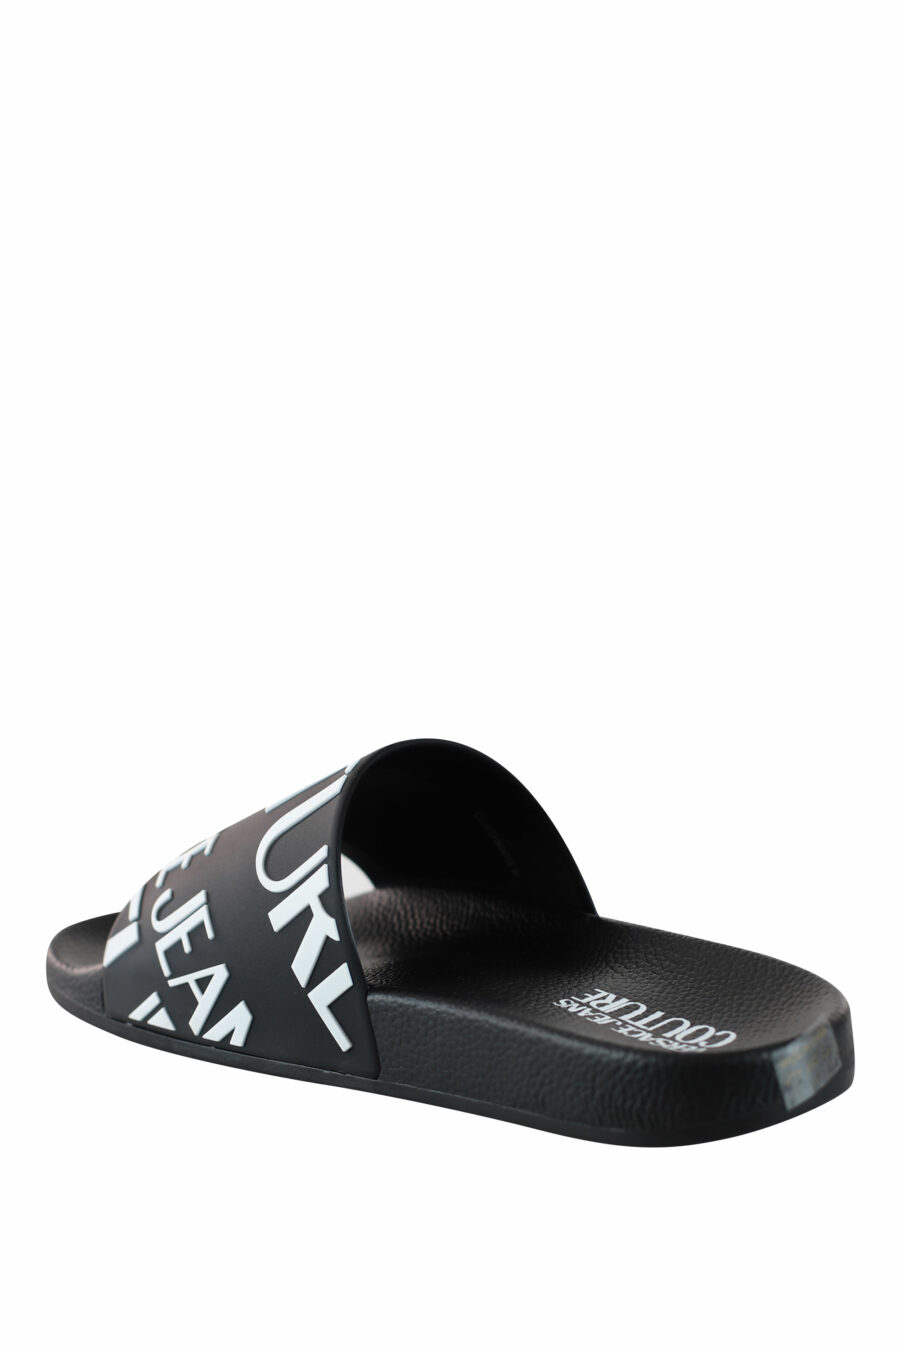 Black flip flops with diagonal white maxilogo - IMG 4440